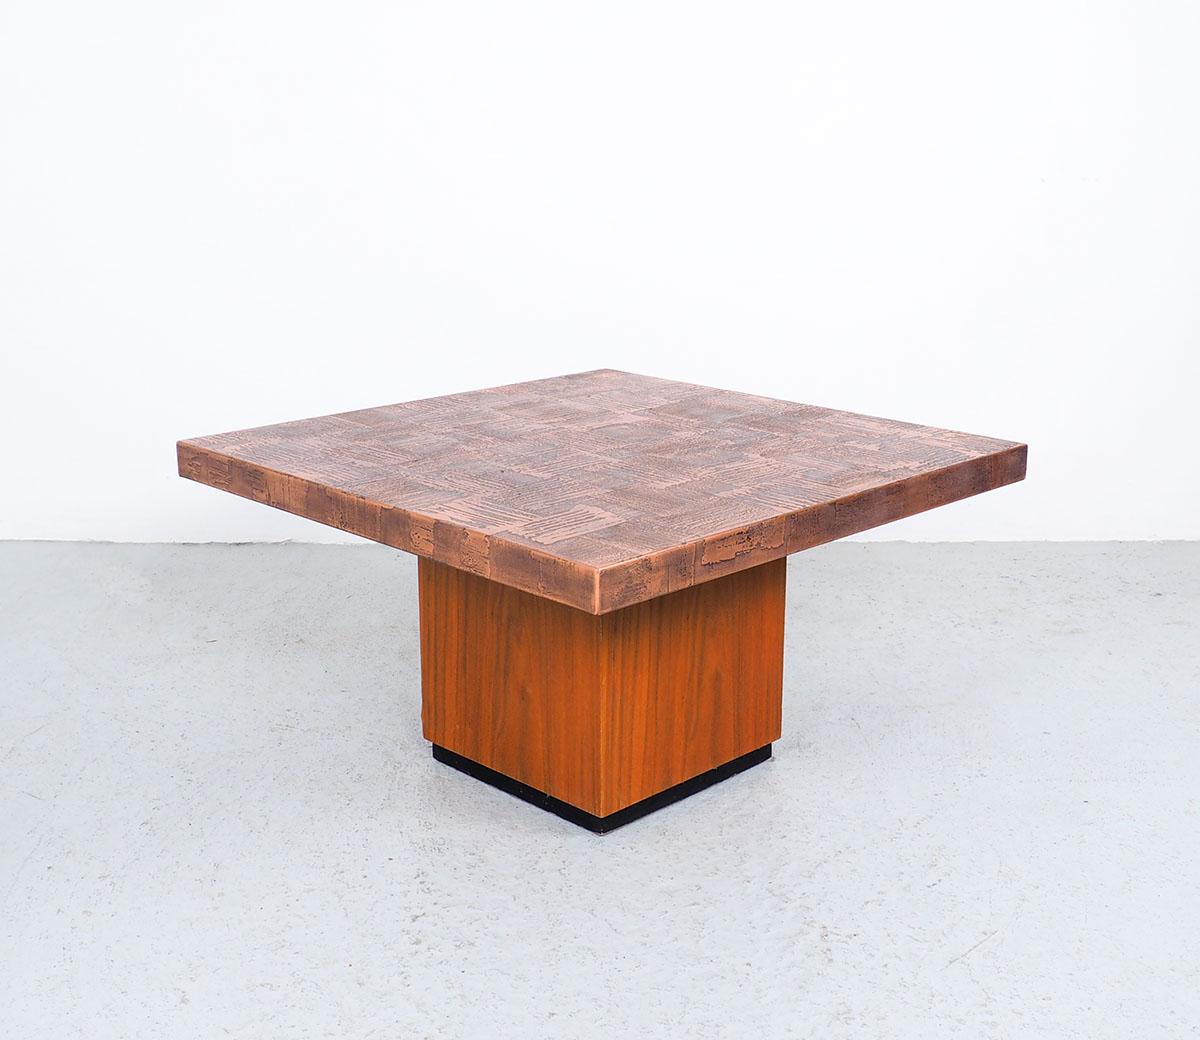 Künstlerischer quadratischer Couchtisch im Vintage-Stil, entworfen von dem deutschen Künstler Heinz Lilienthal (1927-2006).
Entworfen in den 1970er Jahren.
Der Tisch hat eine geätzte Kupferplatte mit einem Sockel aus Teakholz.
Der Tisch wirkt durch